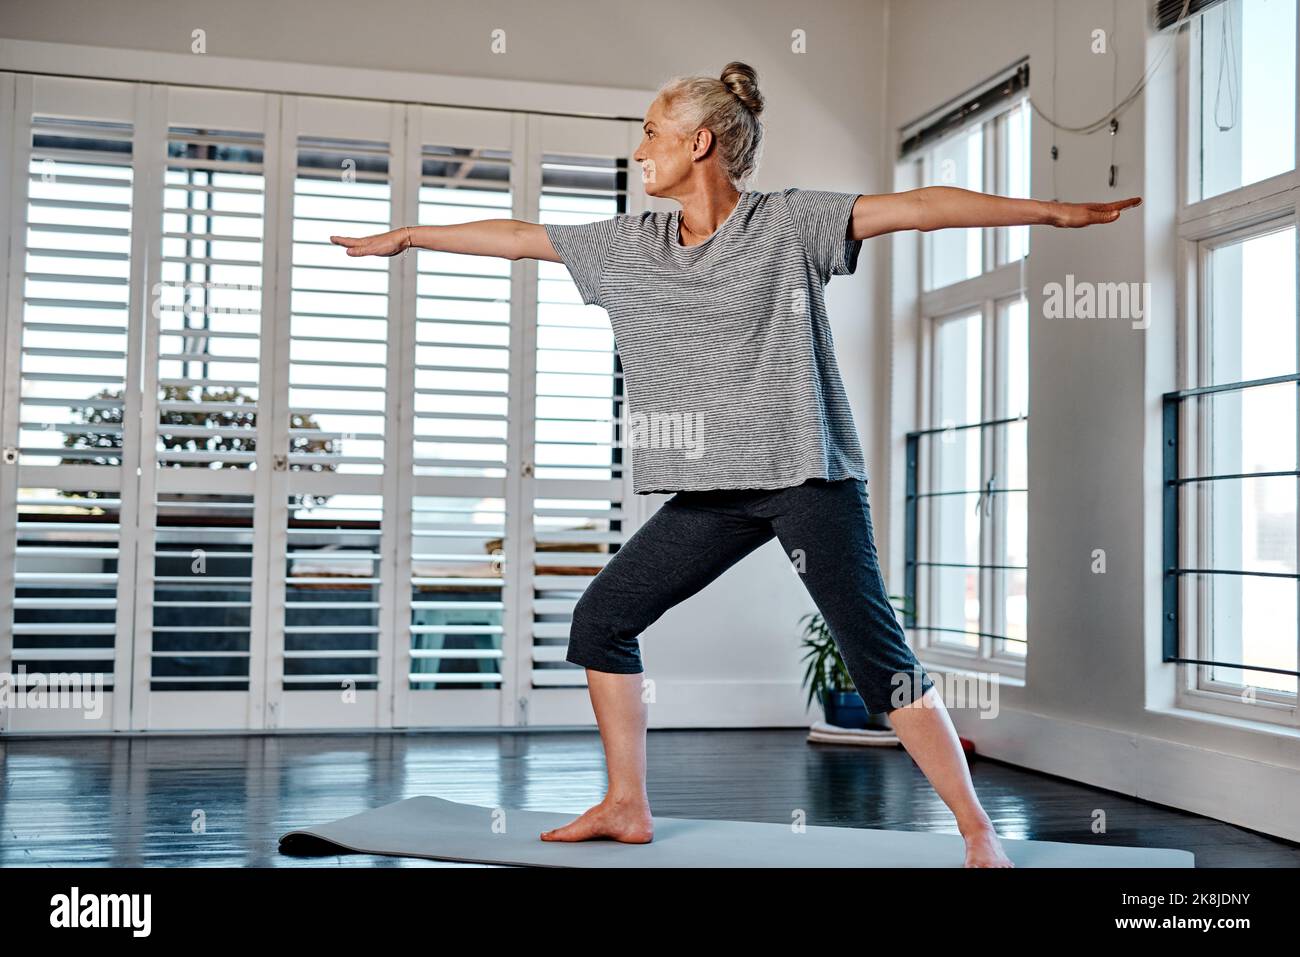 Regardez la vue à l'extérieur. Une femme mature et détendue pratiquant le yoga dans un studio pendant la journée. Banque D'Images